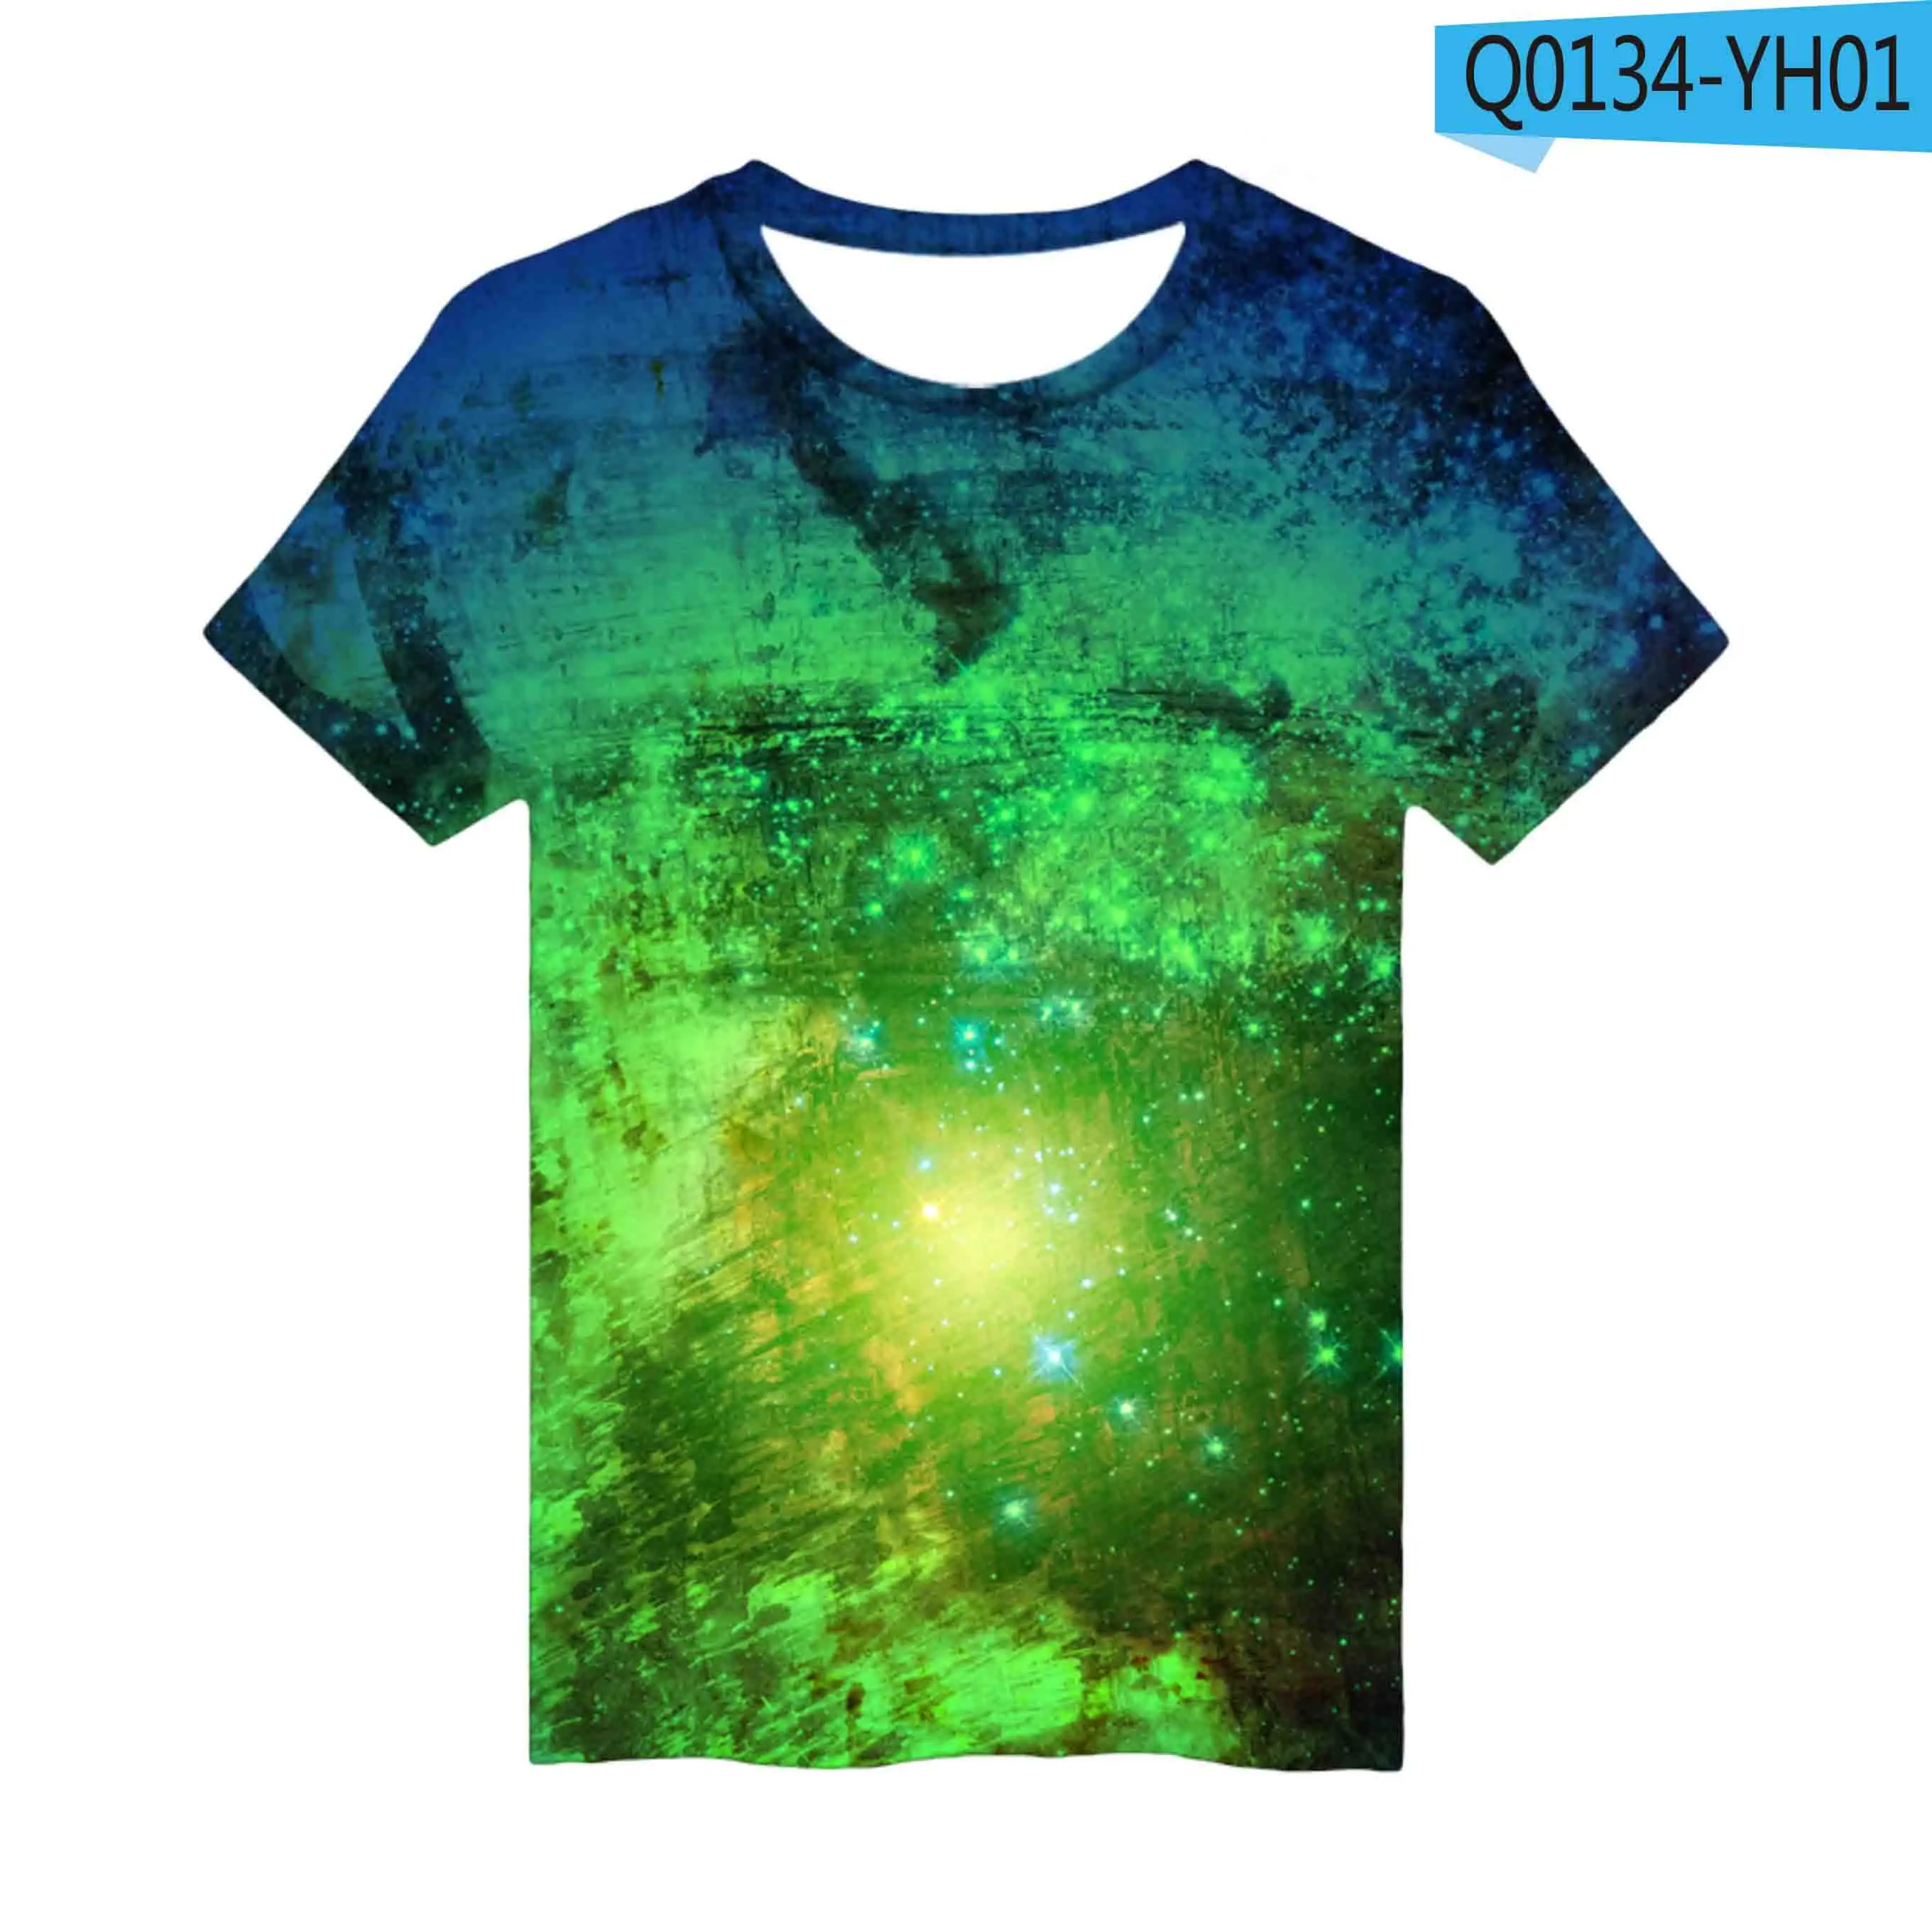 3D космическая галактика футболки для мужчин/женщин Летняя футболка с короткими рукавами для мальчиков/девочек 3D воздушный шар космическая Галактическая футболка дышащая - Цвет: Зеленый